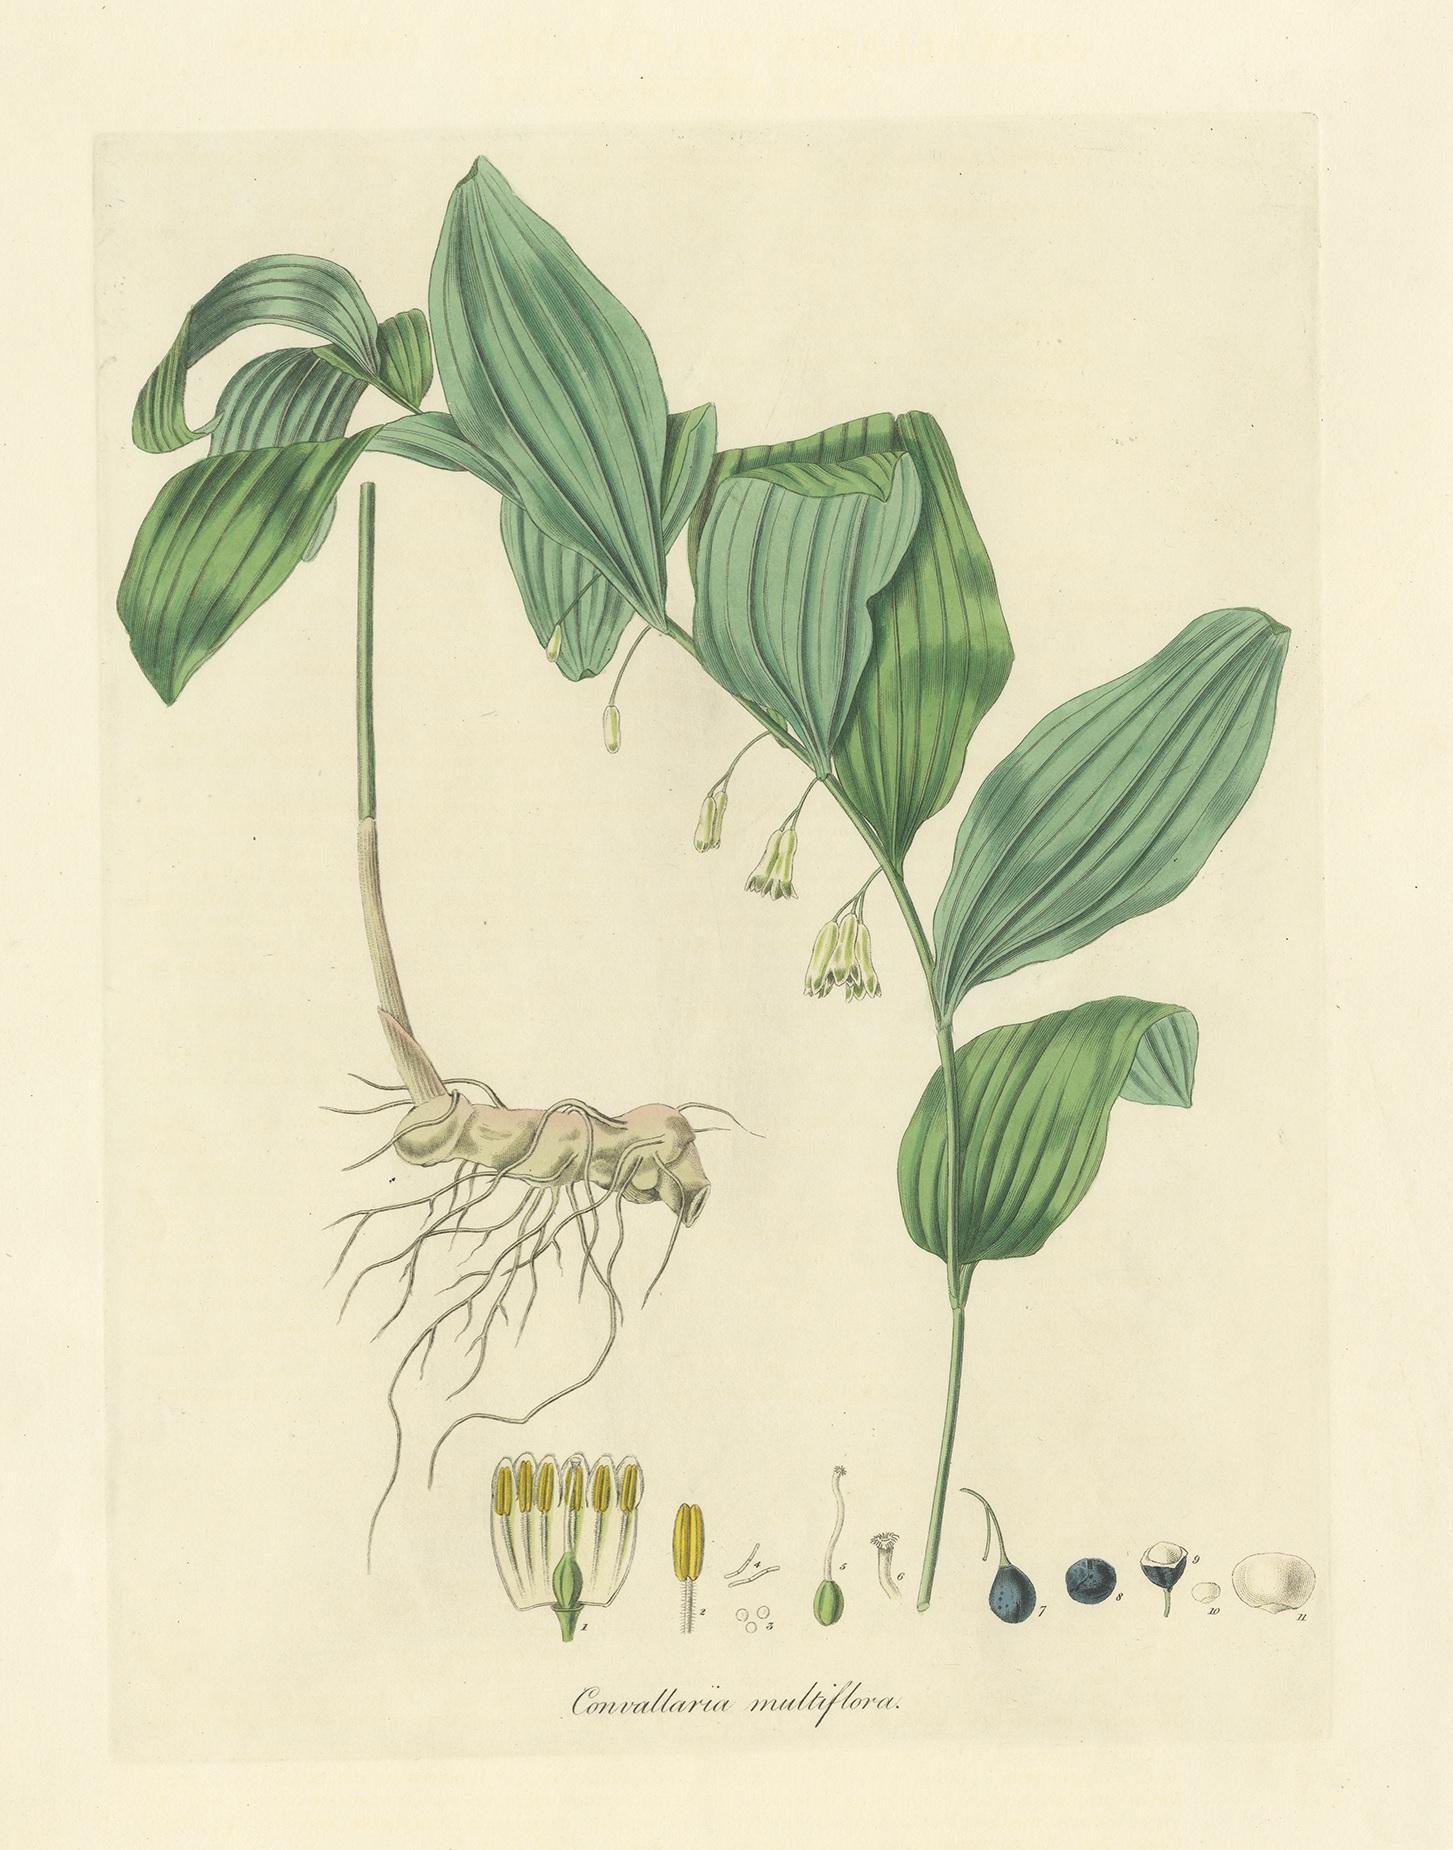 Antiker Botanikdruck mit dem Titel 'Convallaria Multiflora'. Handkolorierte Gravur des gewöhnlichen Salomonssiegels. Dieser Druck stammt aus der 